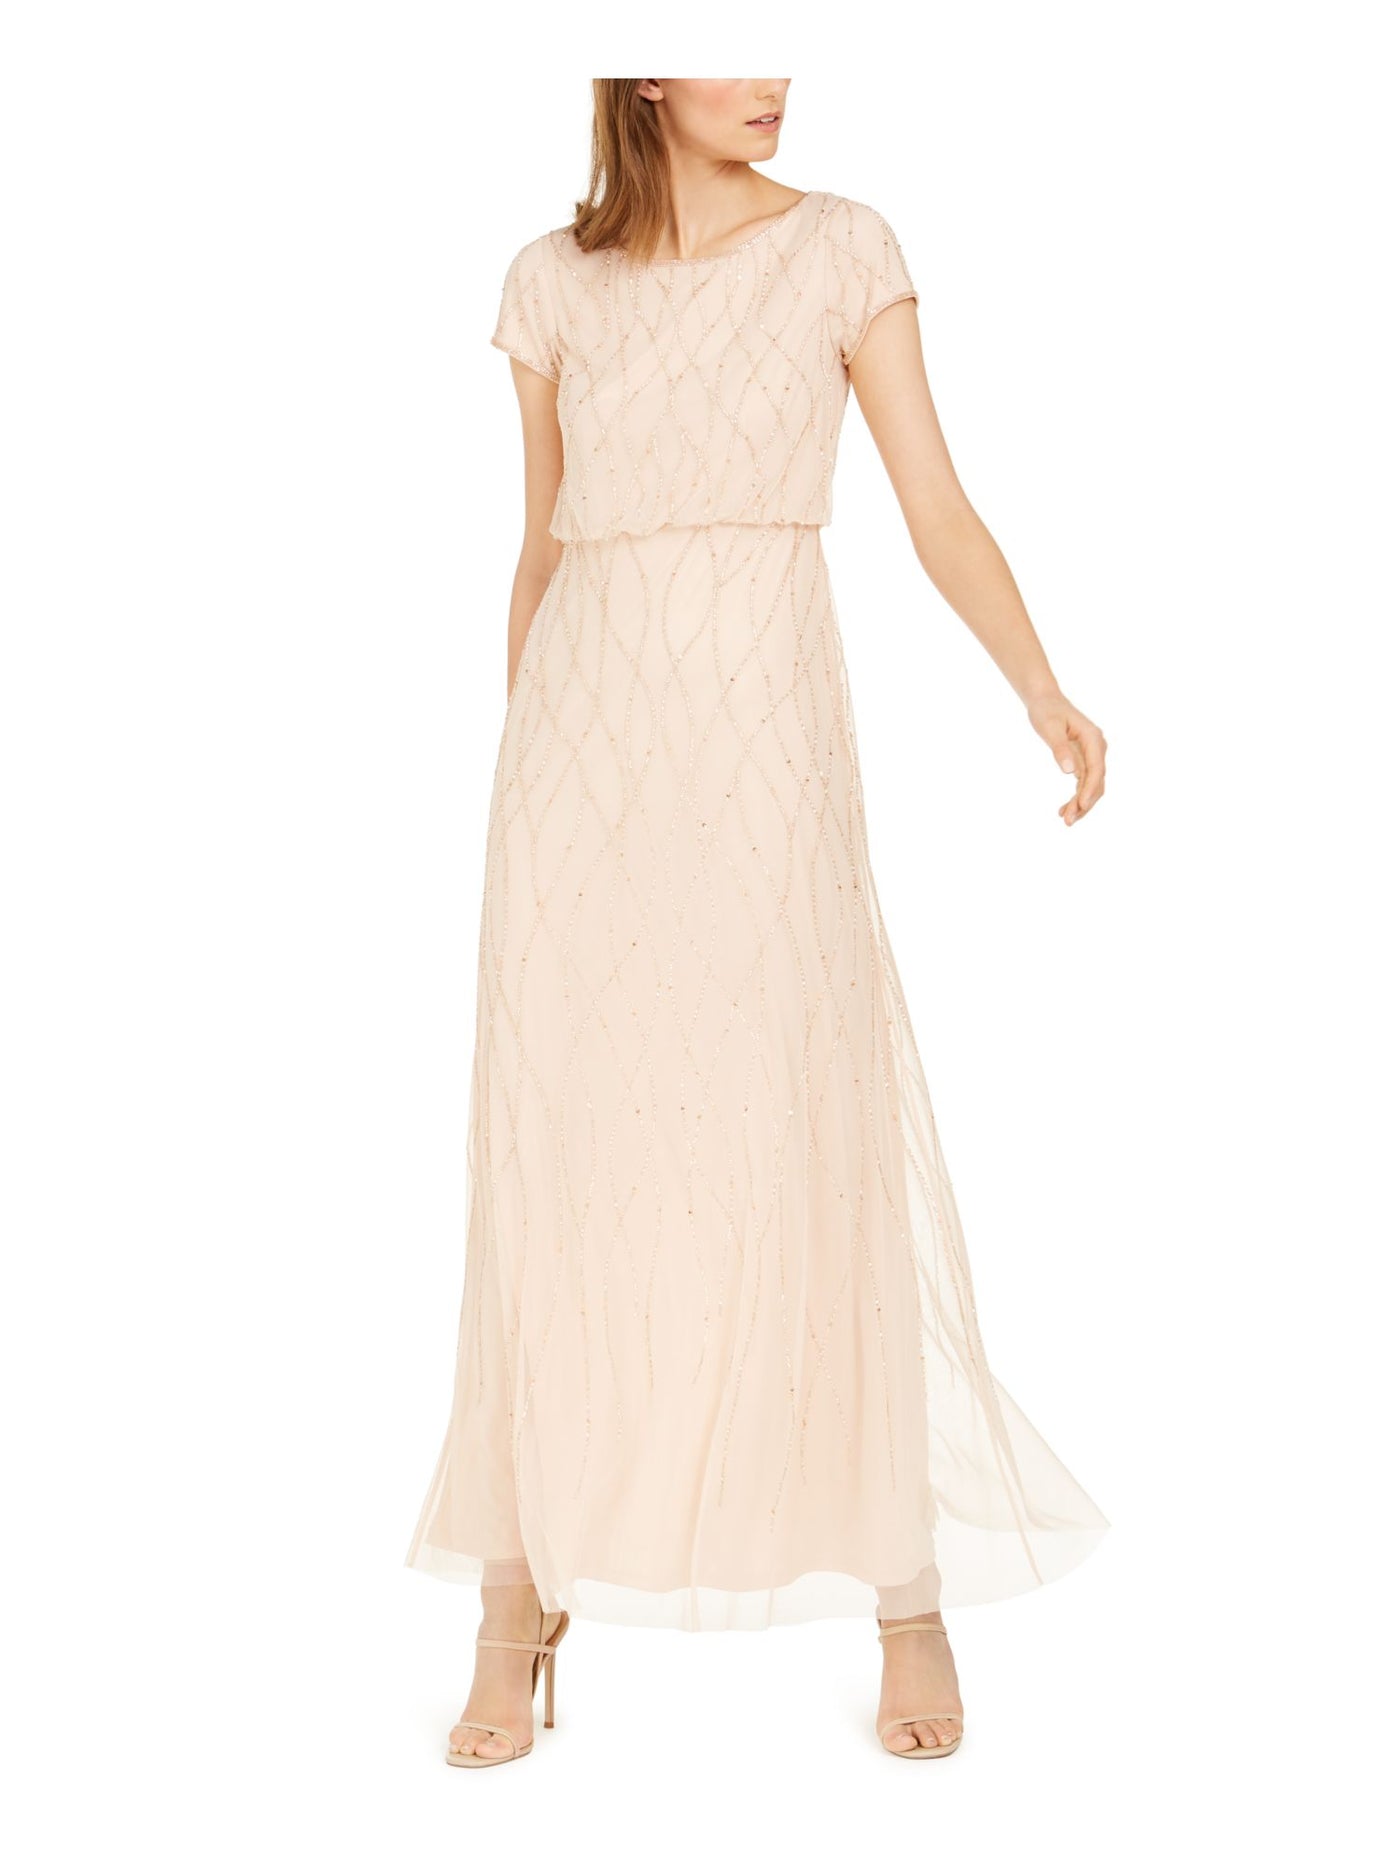 ADRIANNA PAPELL Womens Beige Beaded Mesh Overlay Gown Short Sleeve Scoop Neck Full-Length Formal Blouson Dress 8